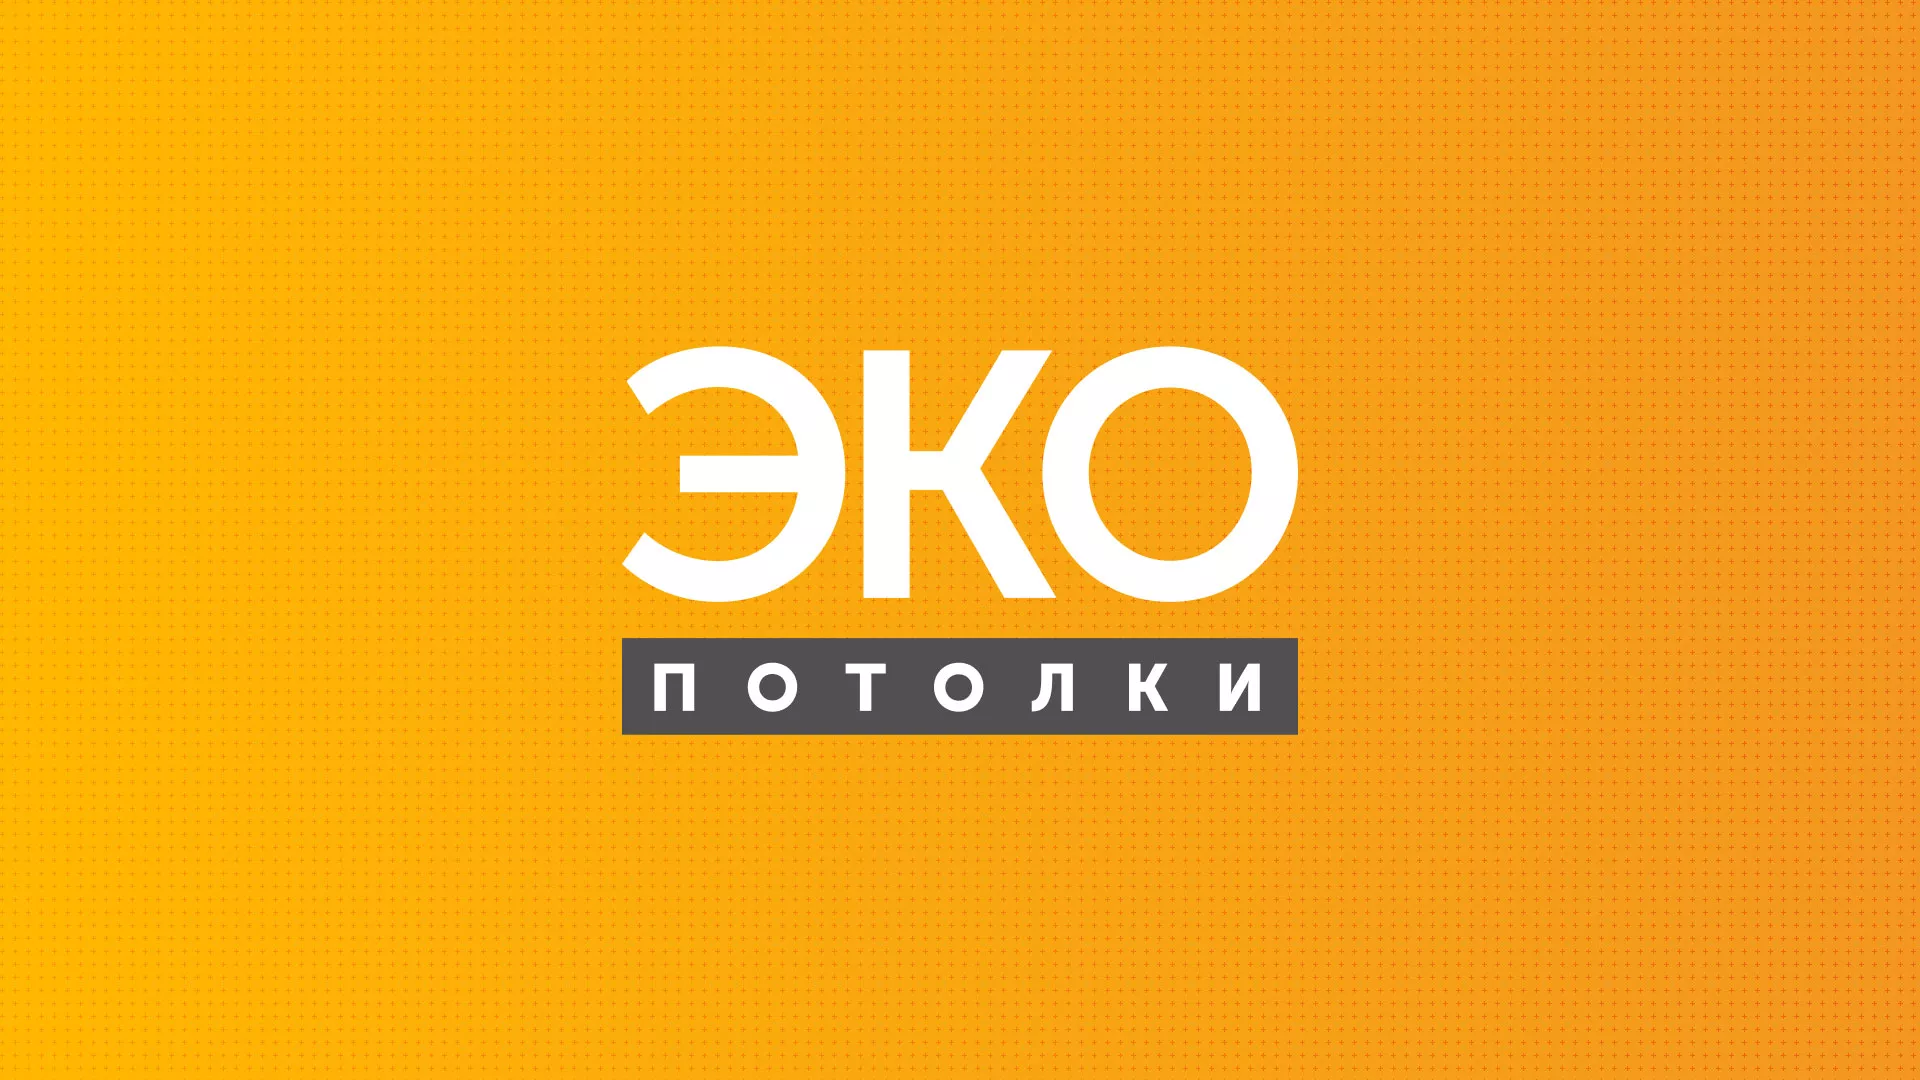 Разработка сайта по натяжным потолкам «Эко Потолки» в Ульяновске